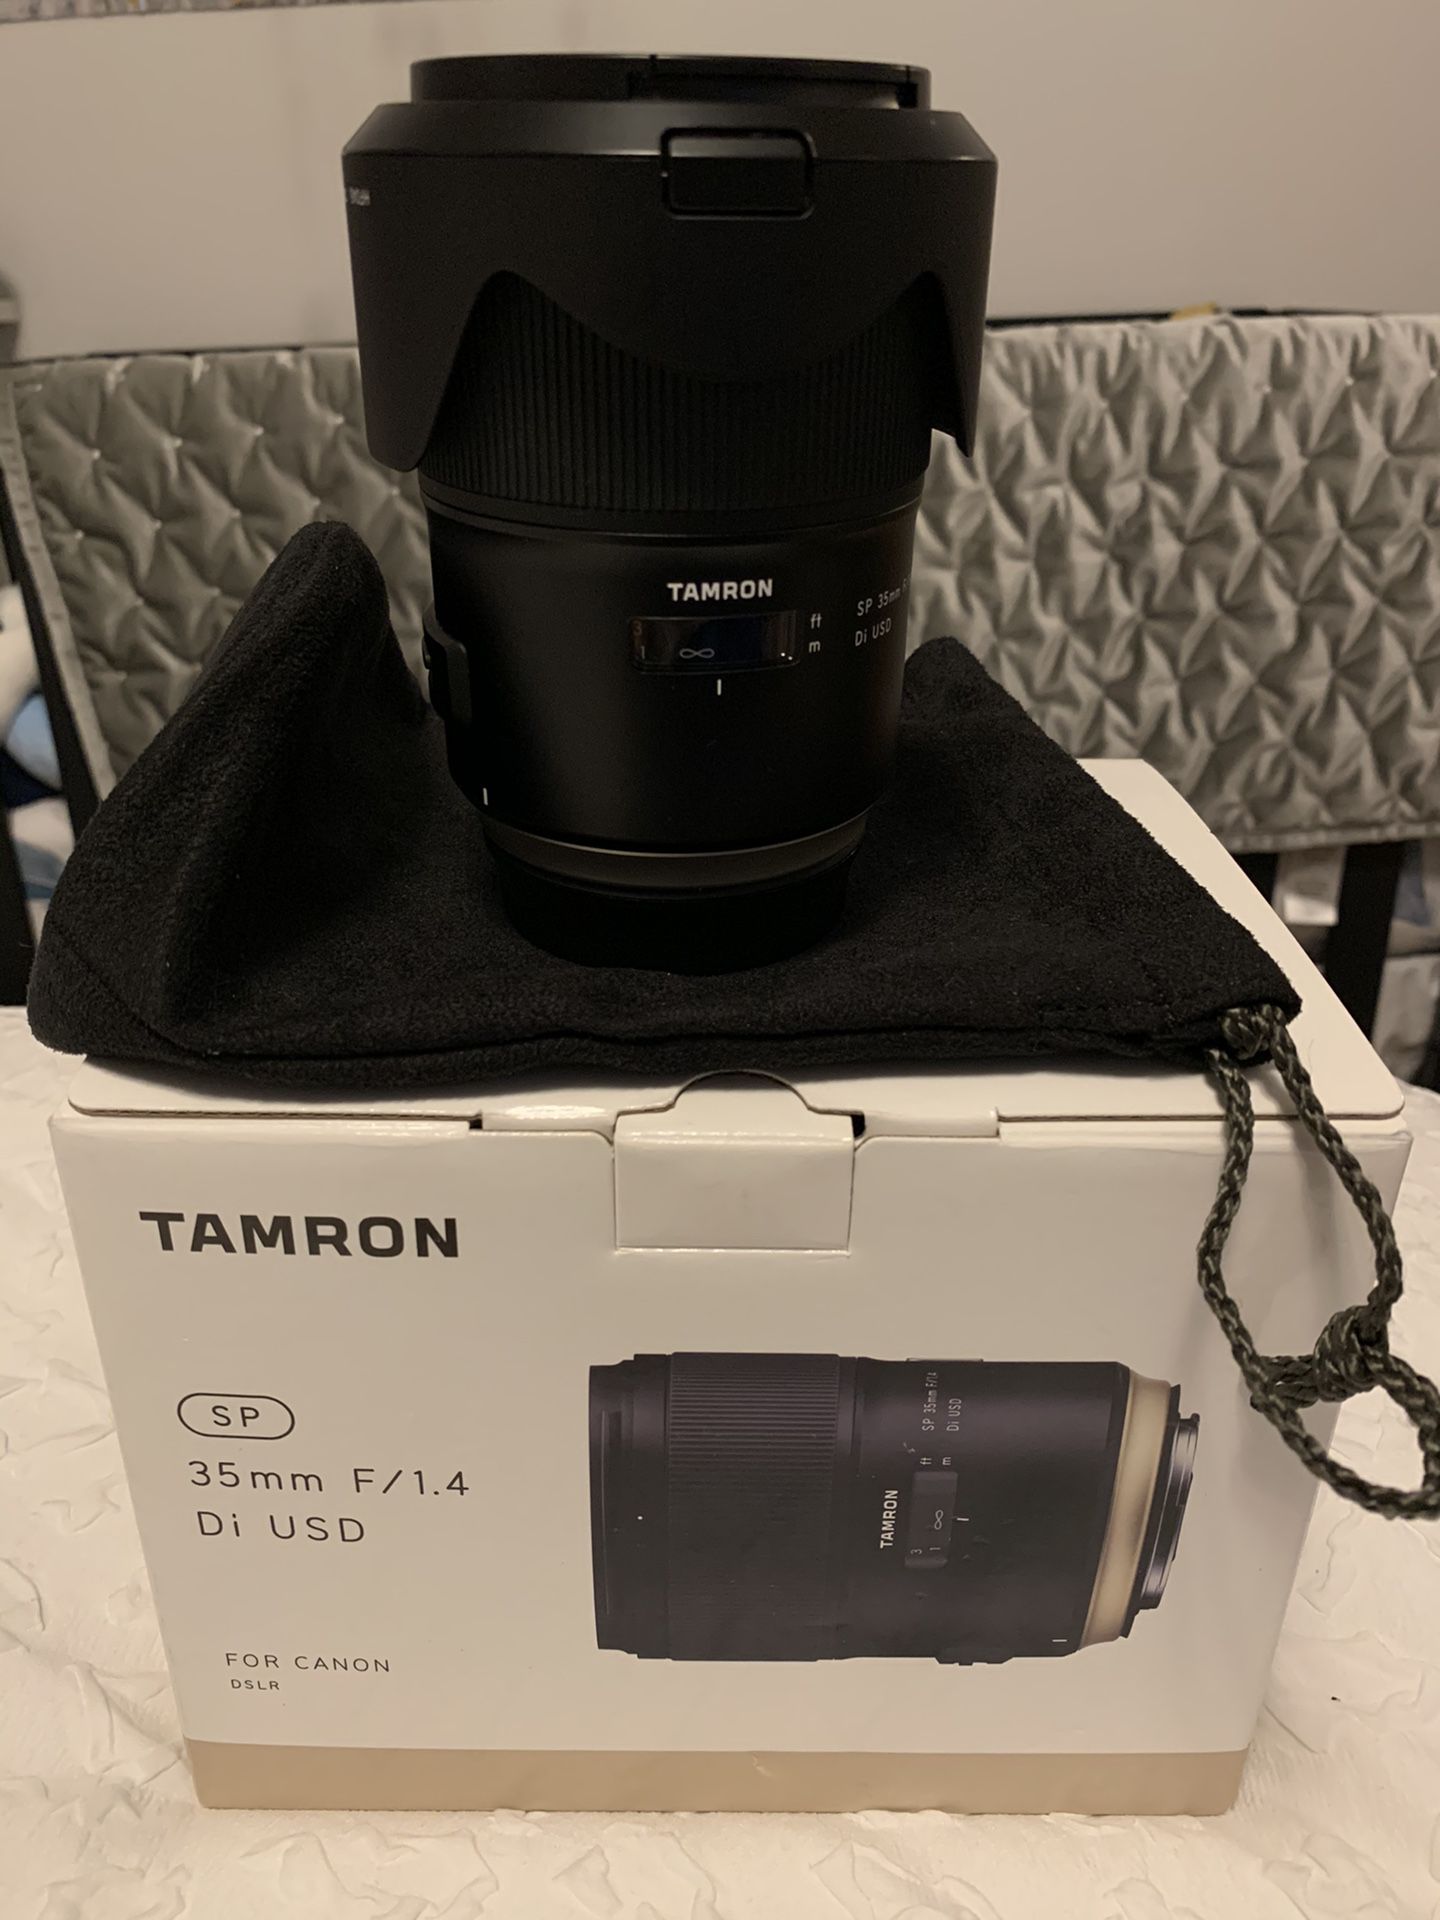 Tamron 35mm F/1.4 Di USD